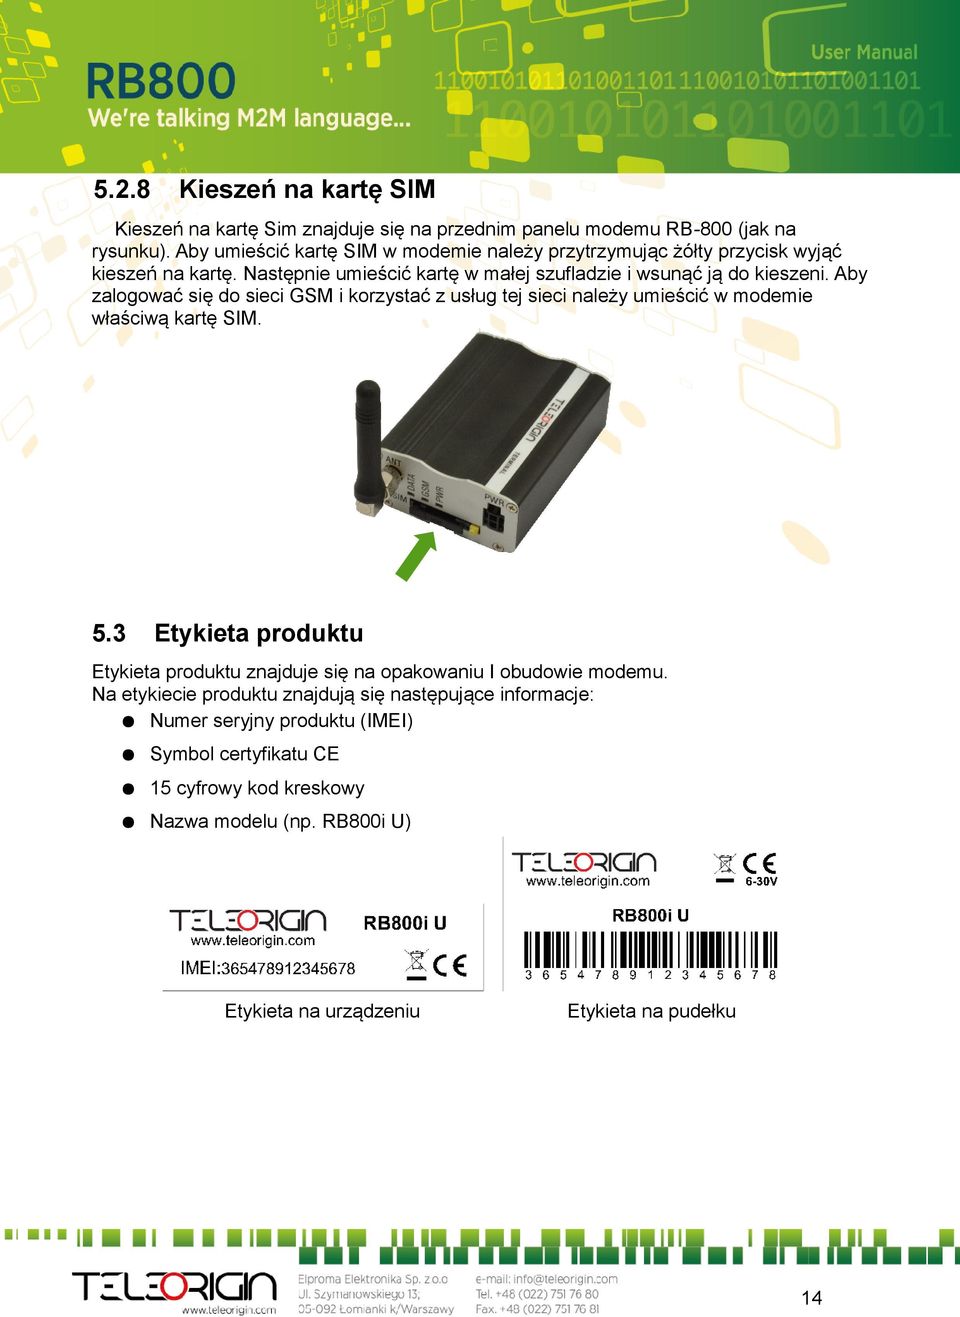 Aby zalogować się do sieci GSM i korzystać z usług tej sieci należy umieścić w modemie właściwą kartę SIM. 5.